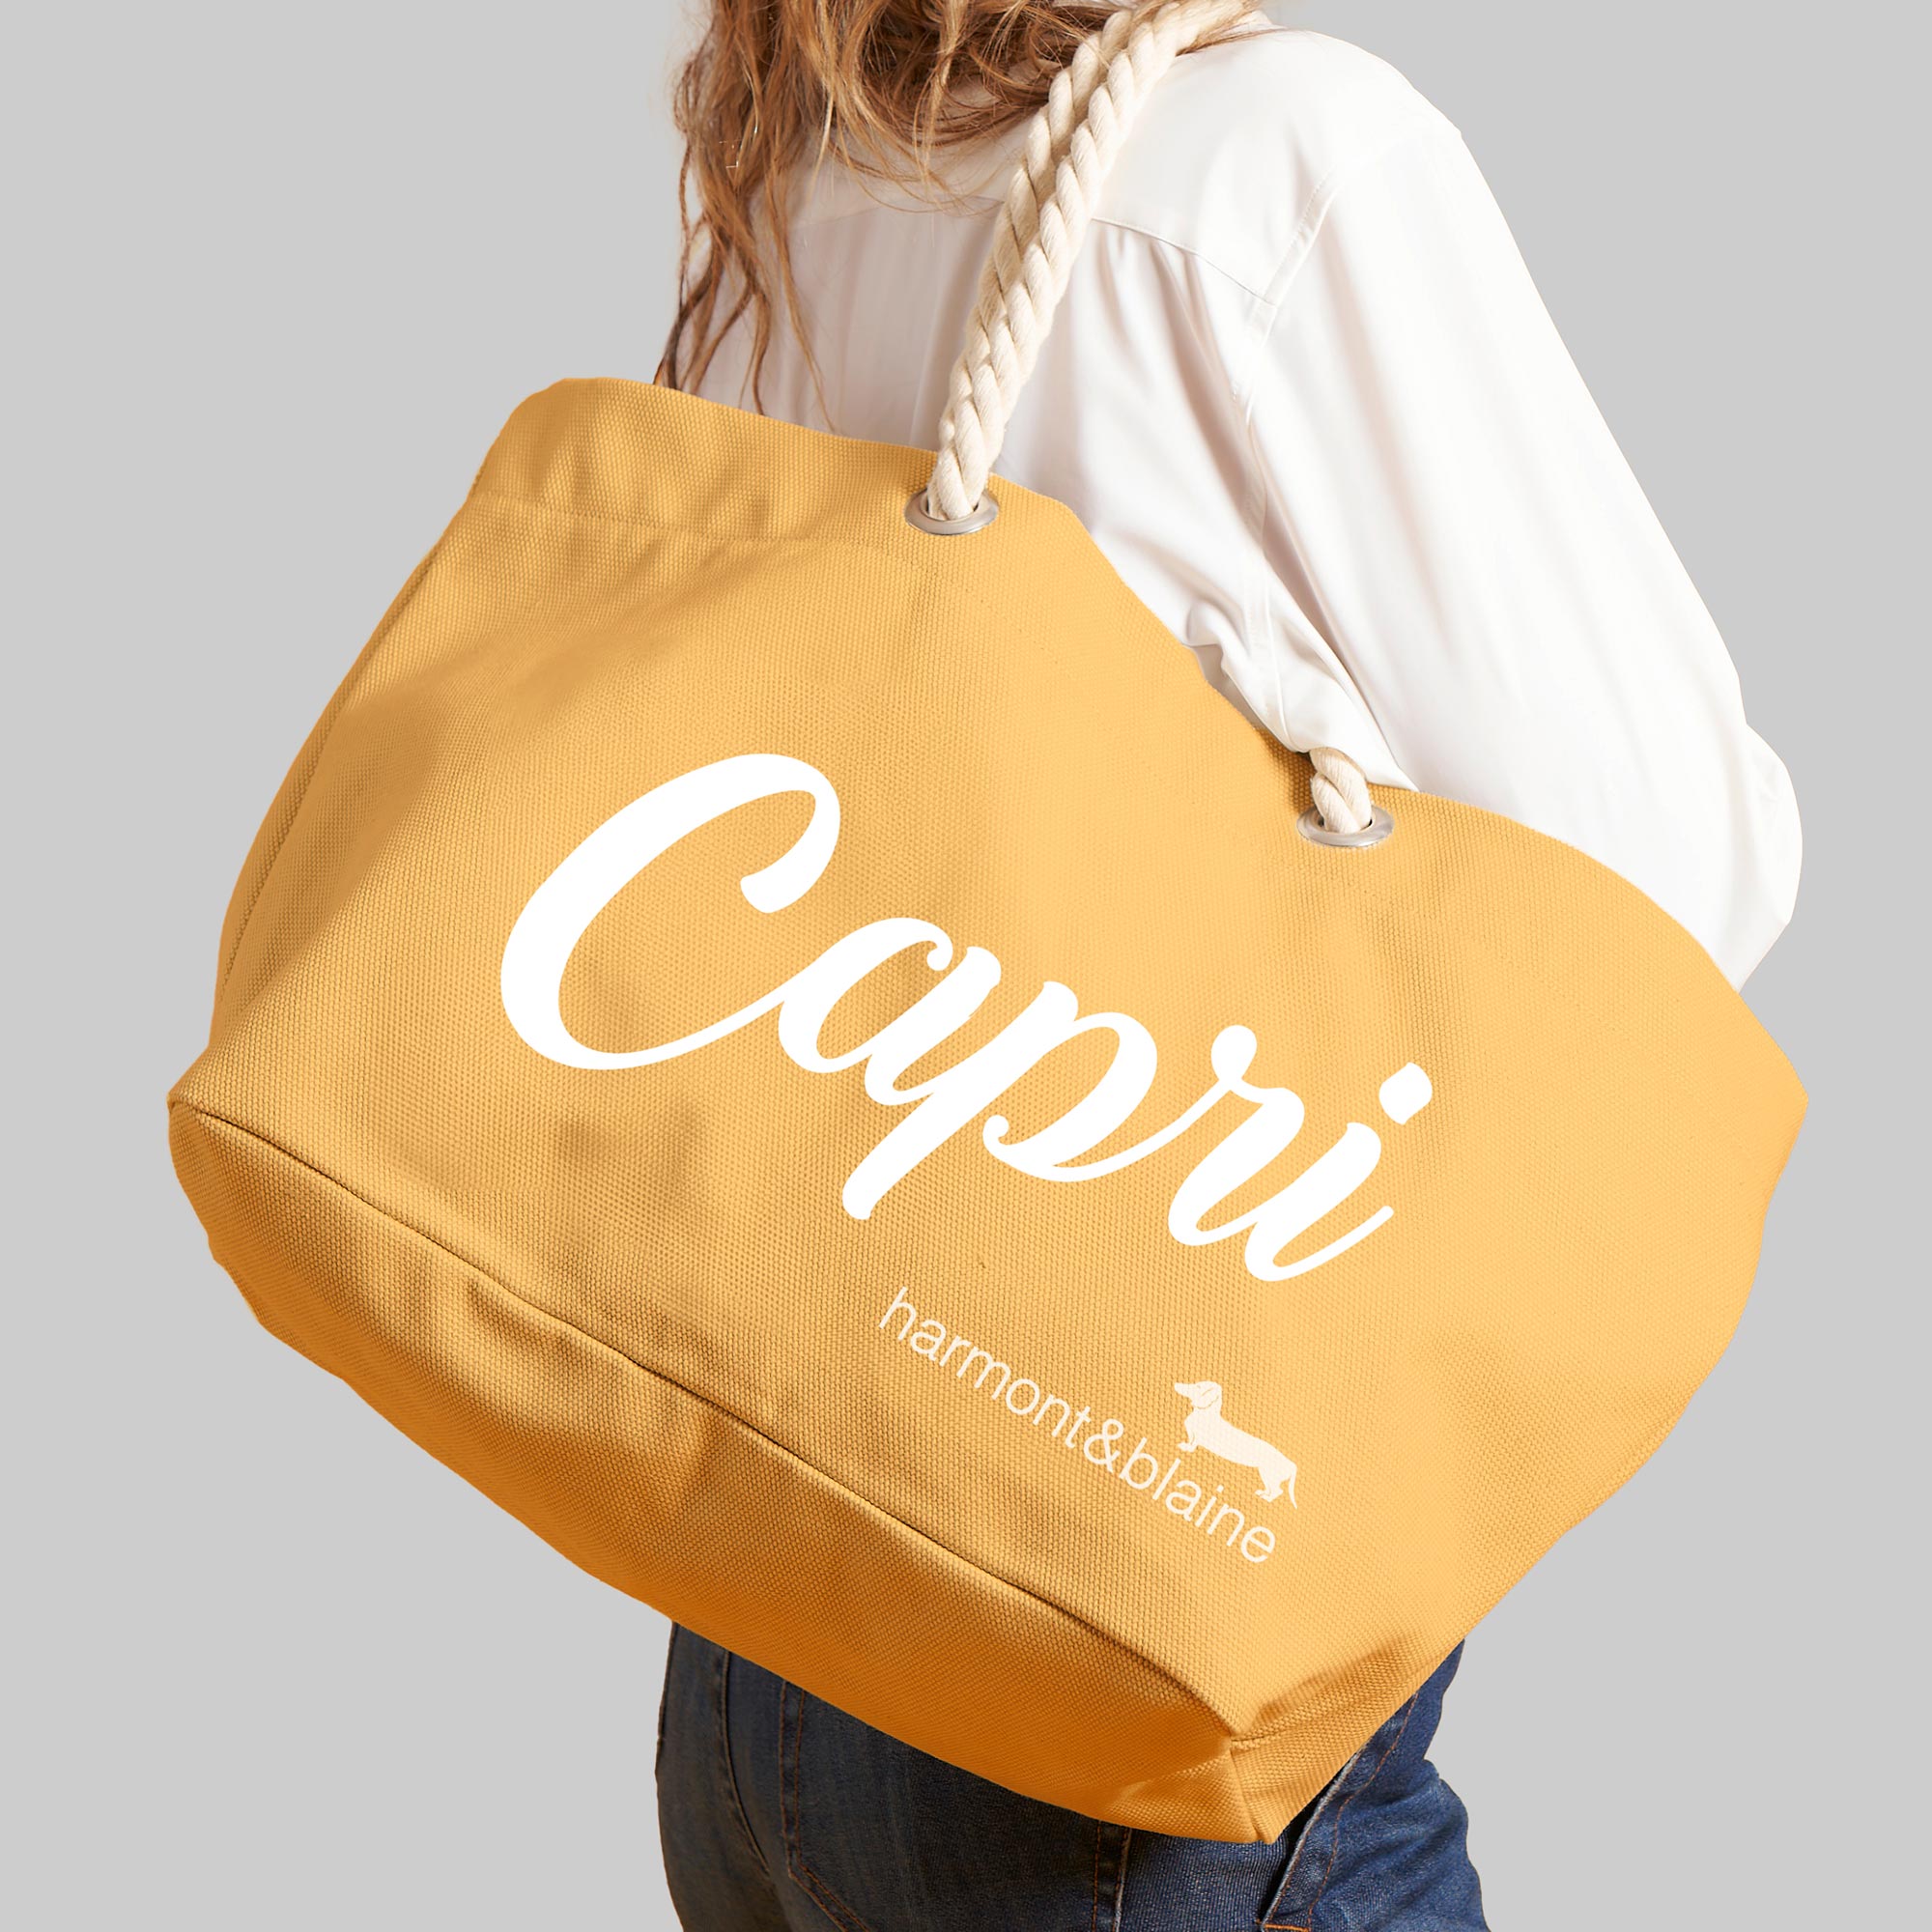 Capri Shopper